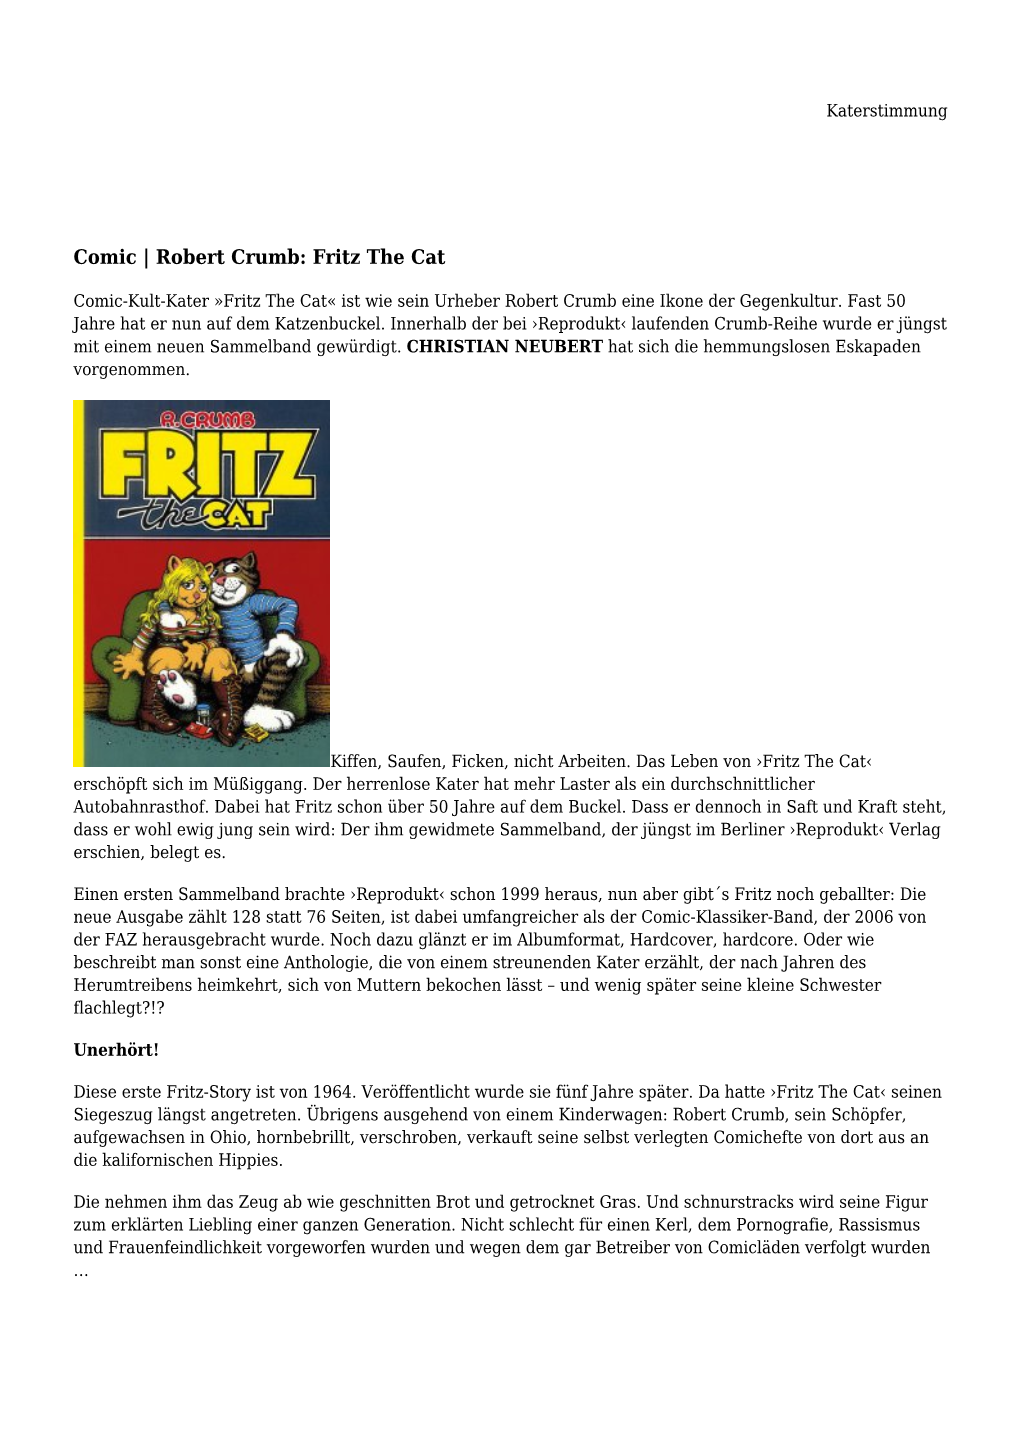 Comic | Robert Crumb: Fritz the Cat